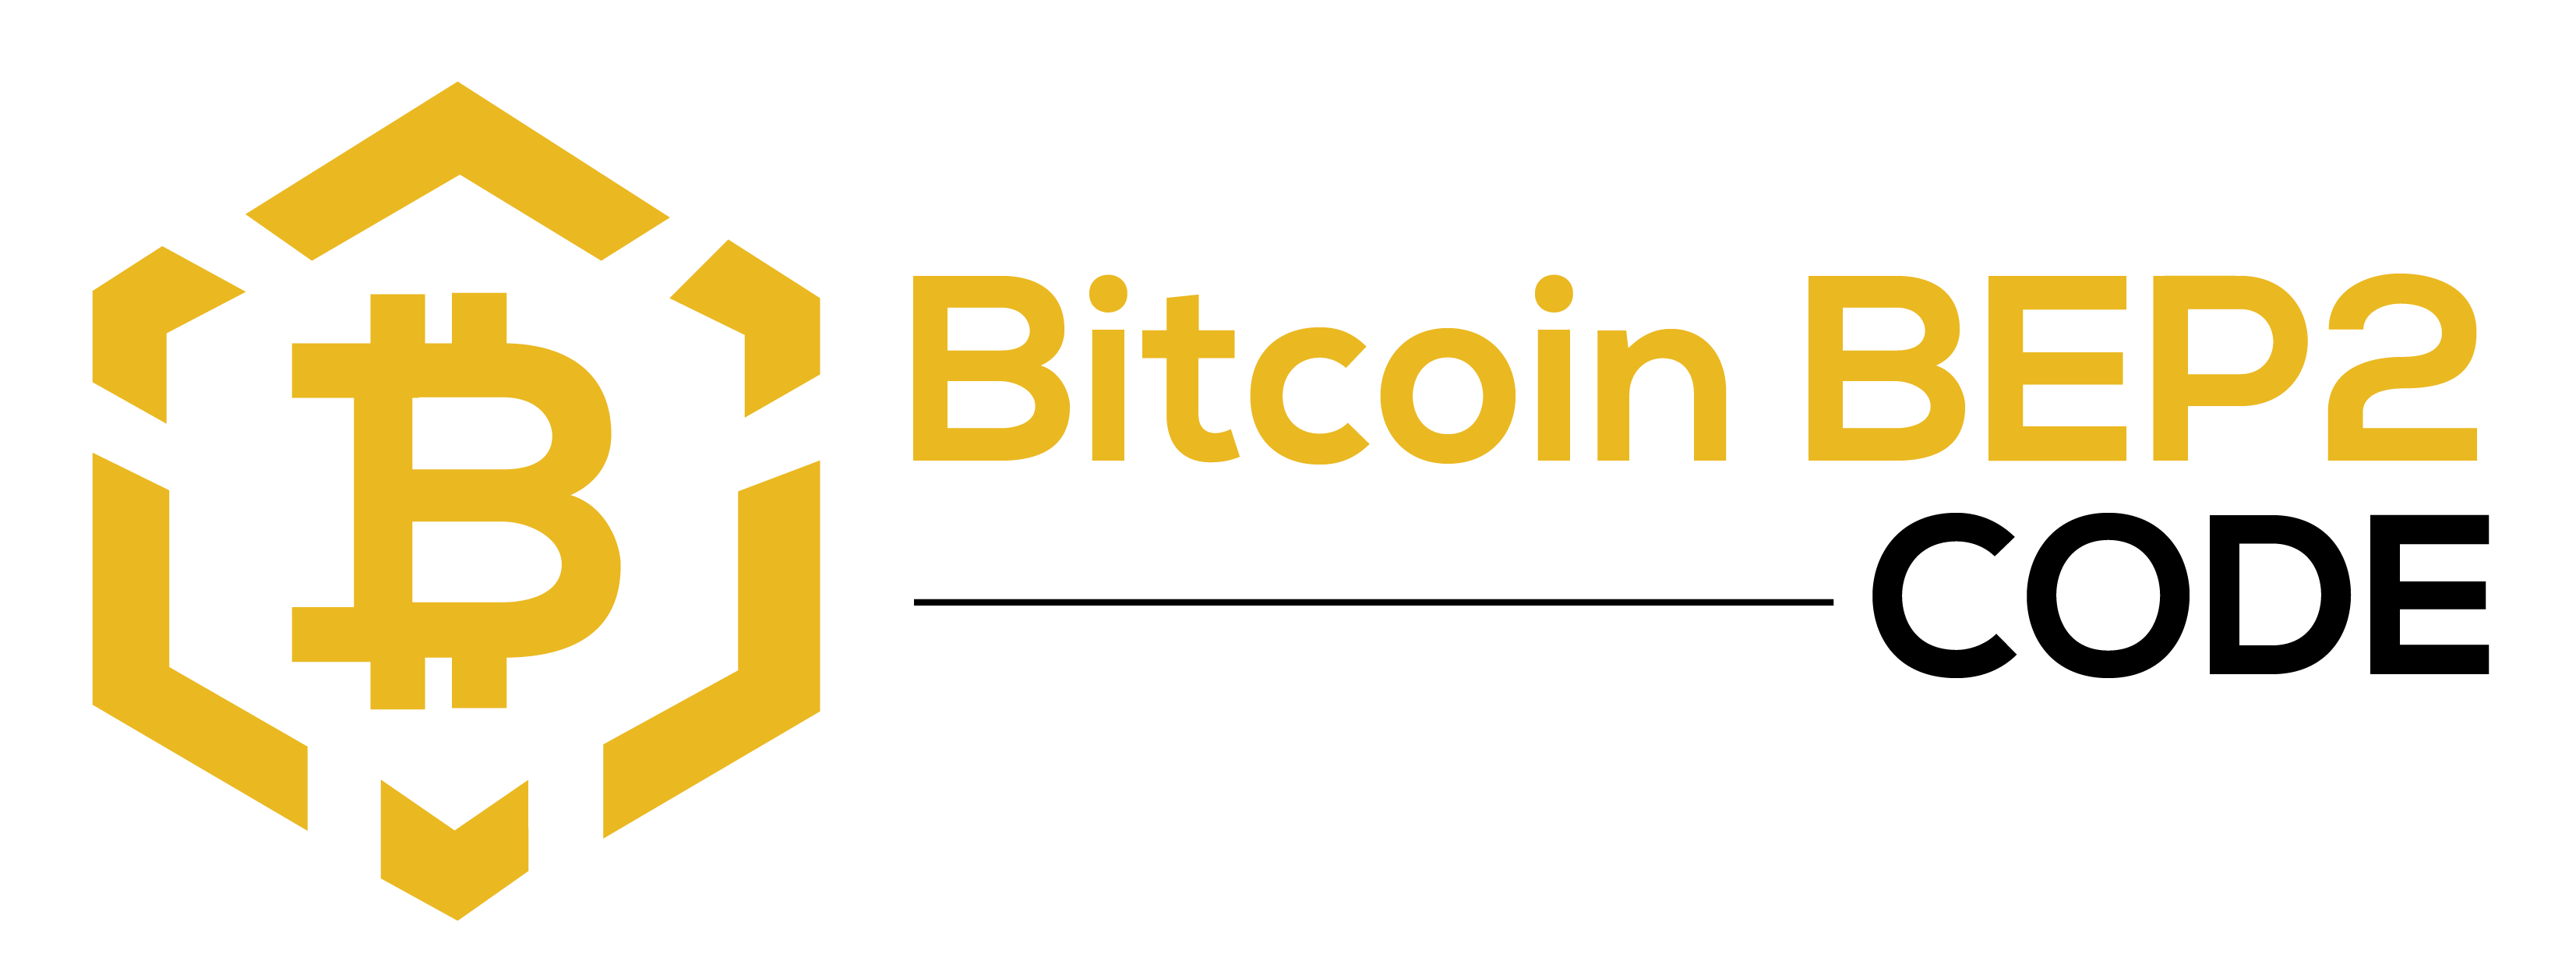 Bitcoin BEP2 Code - Ota yhteyttä meihin